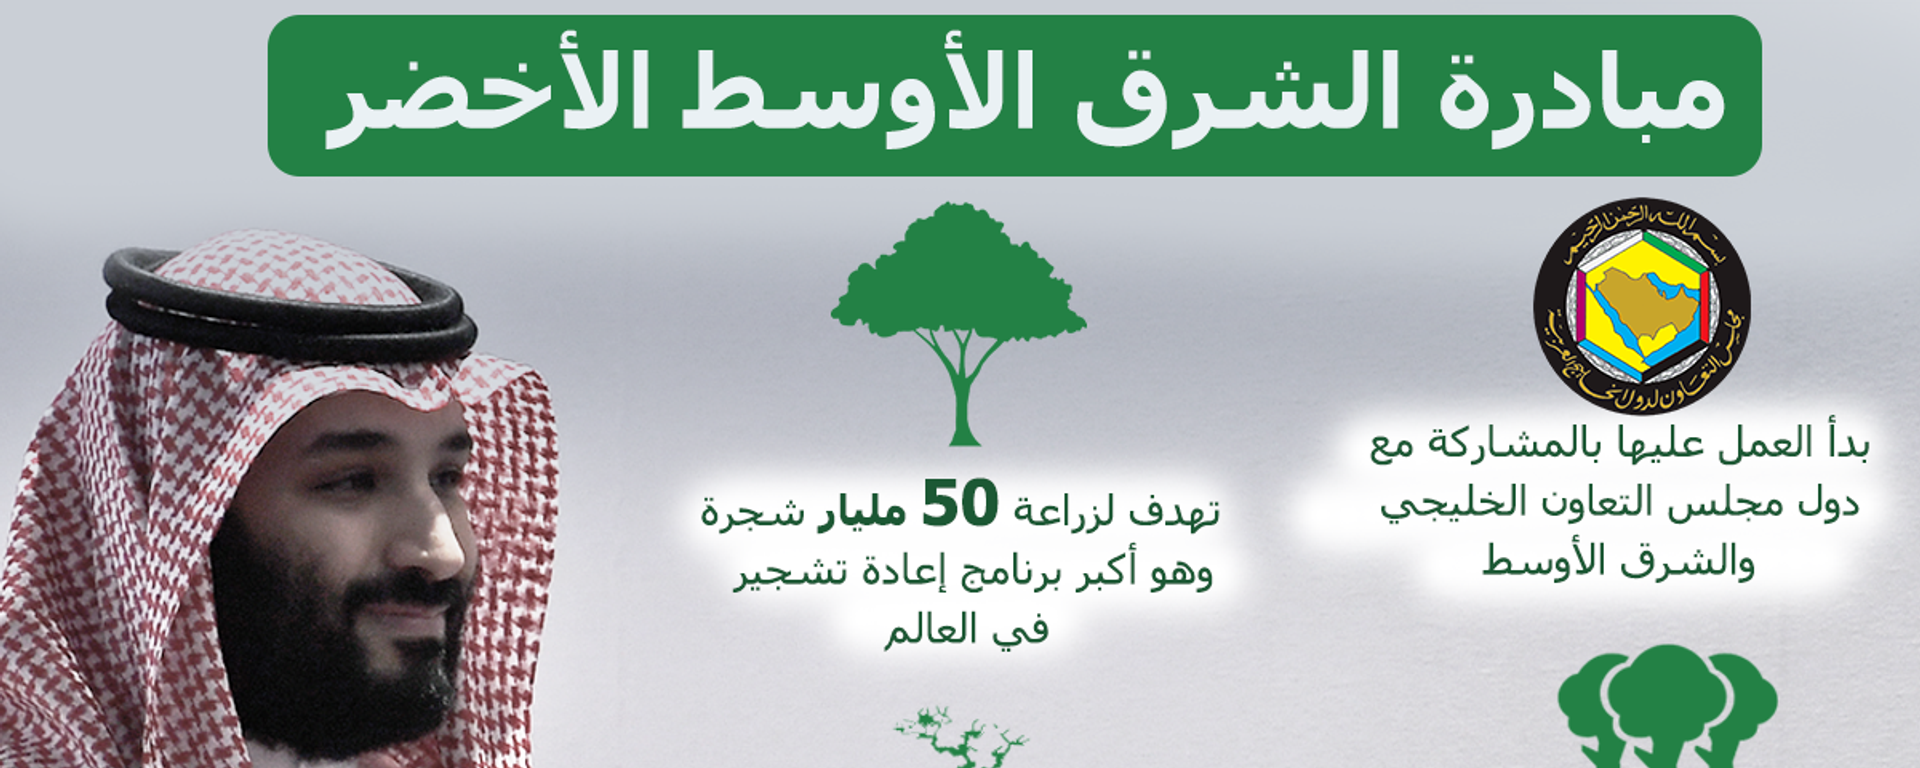 مبادرة الشرق الأوسط الأخضر - سبوتنيك عربي, 1920, 30.03.2021